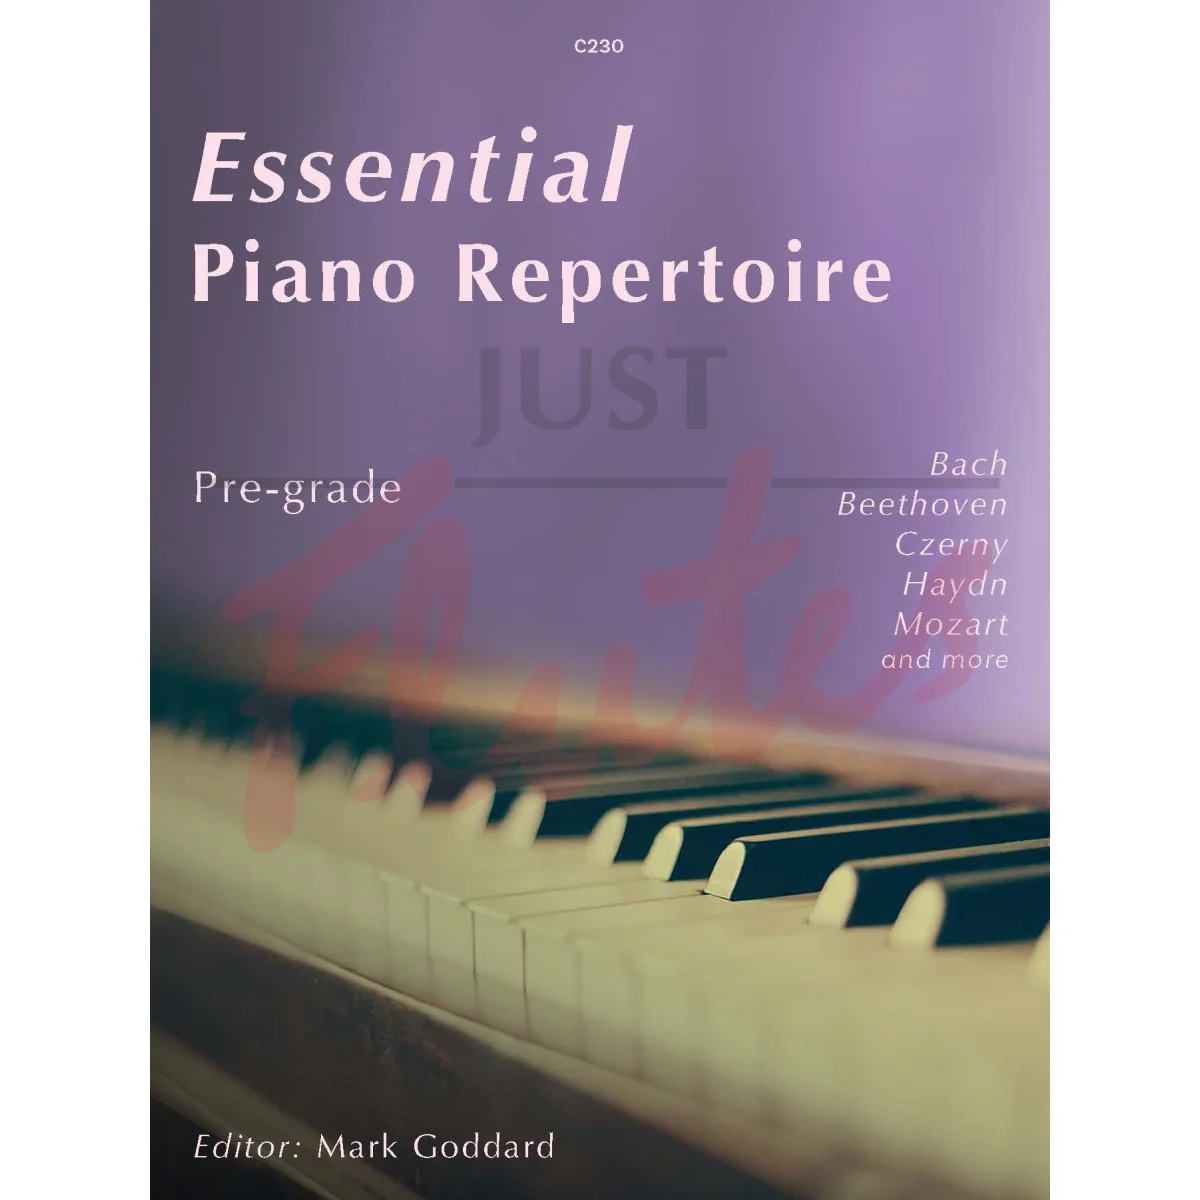 Essential Piano Repertoire: Pre-grade